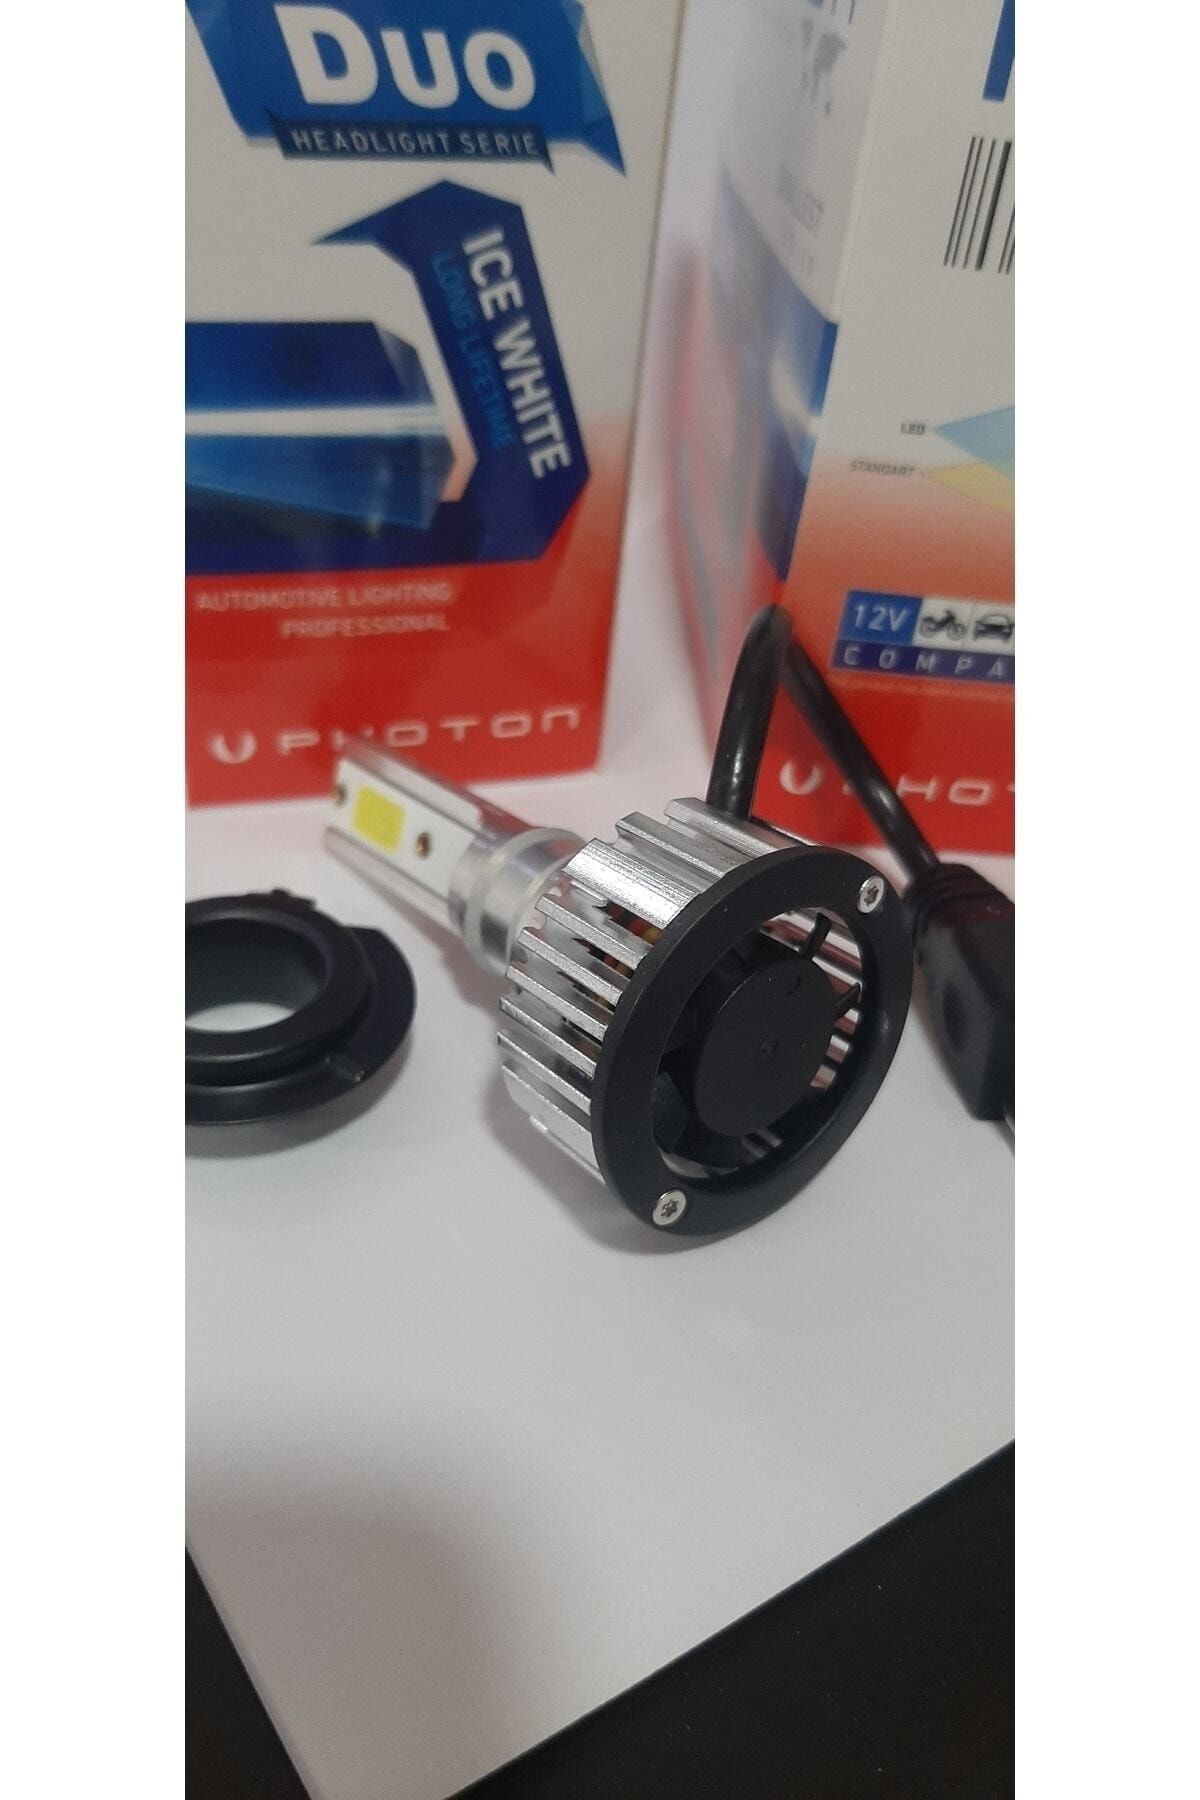 PHOTON DUO SERIES H1 headlight LED lamps 12-24V / P14.5s 6000Lm (2pcs)